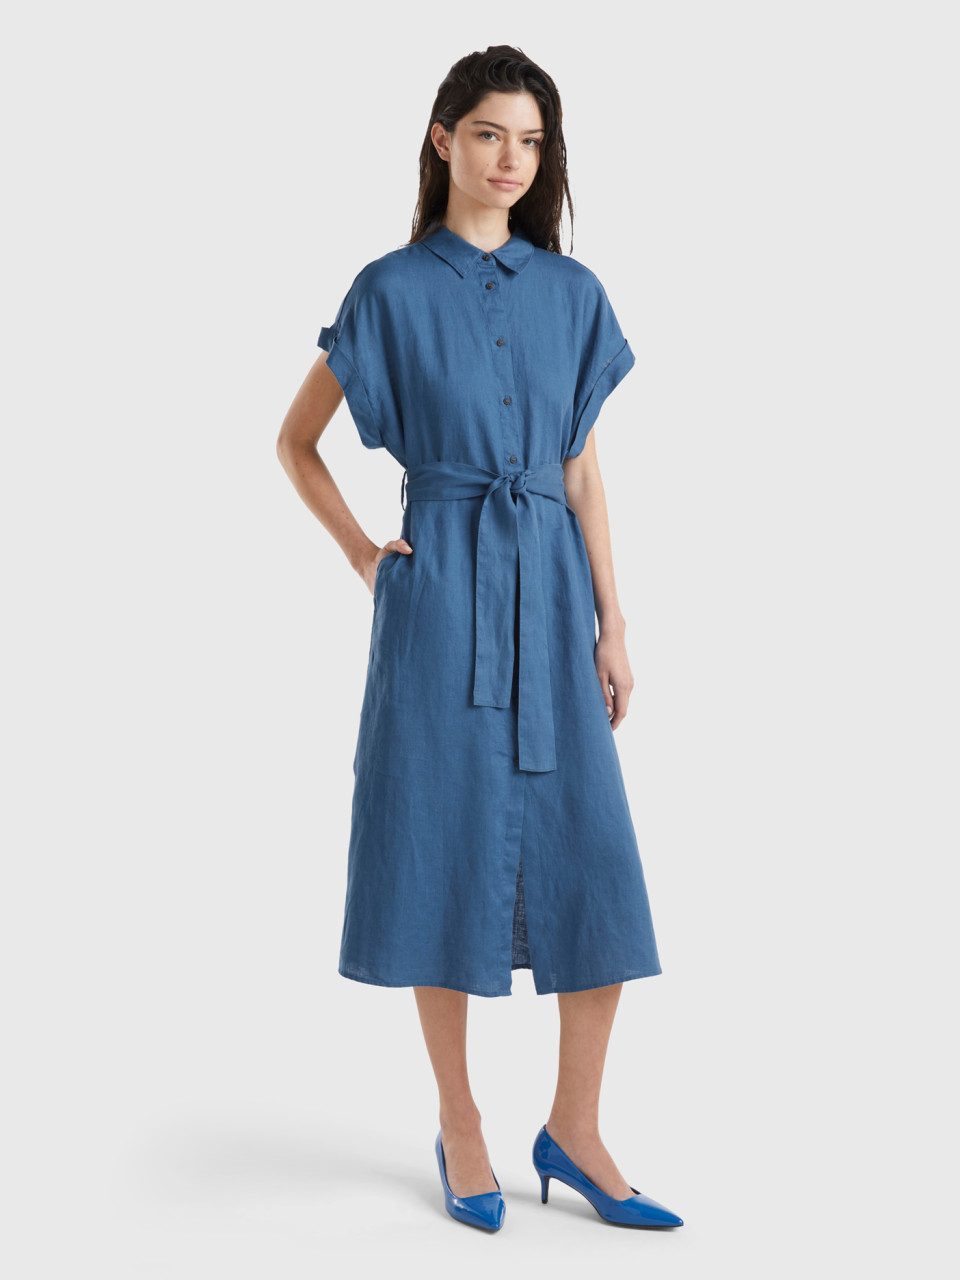 Benetton, Midi Shirt Dress In Pure Linen, Air Force Blue, Women